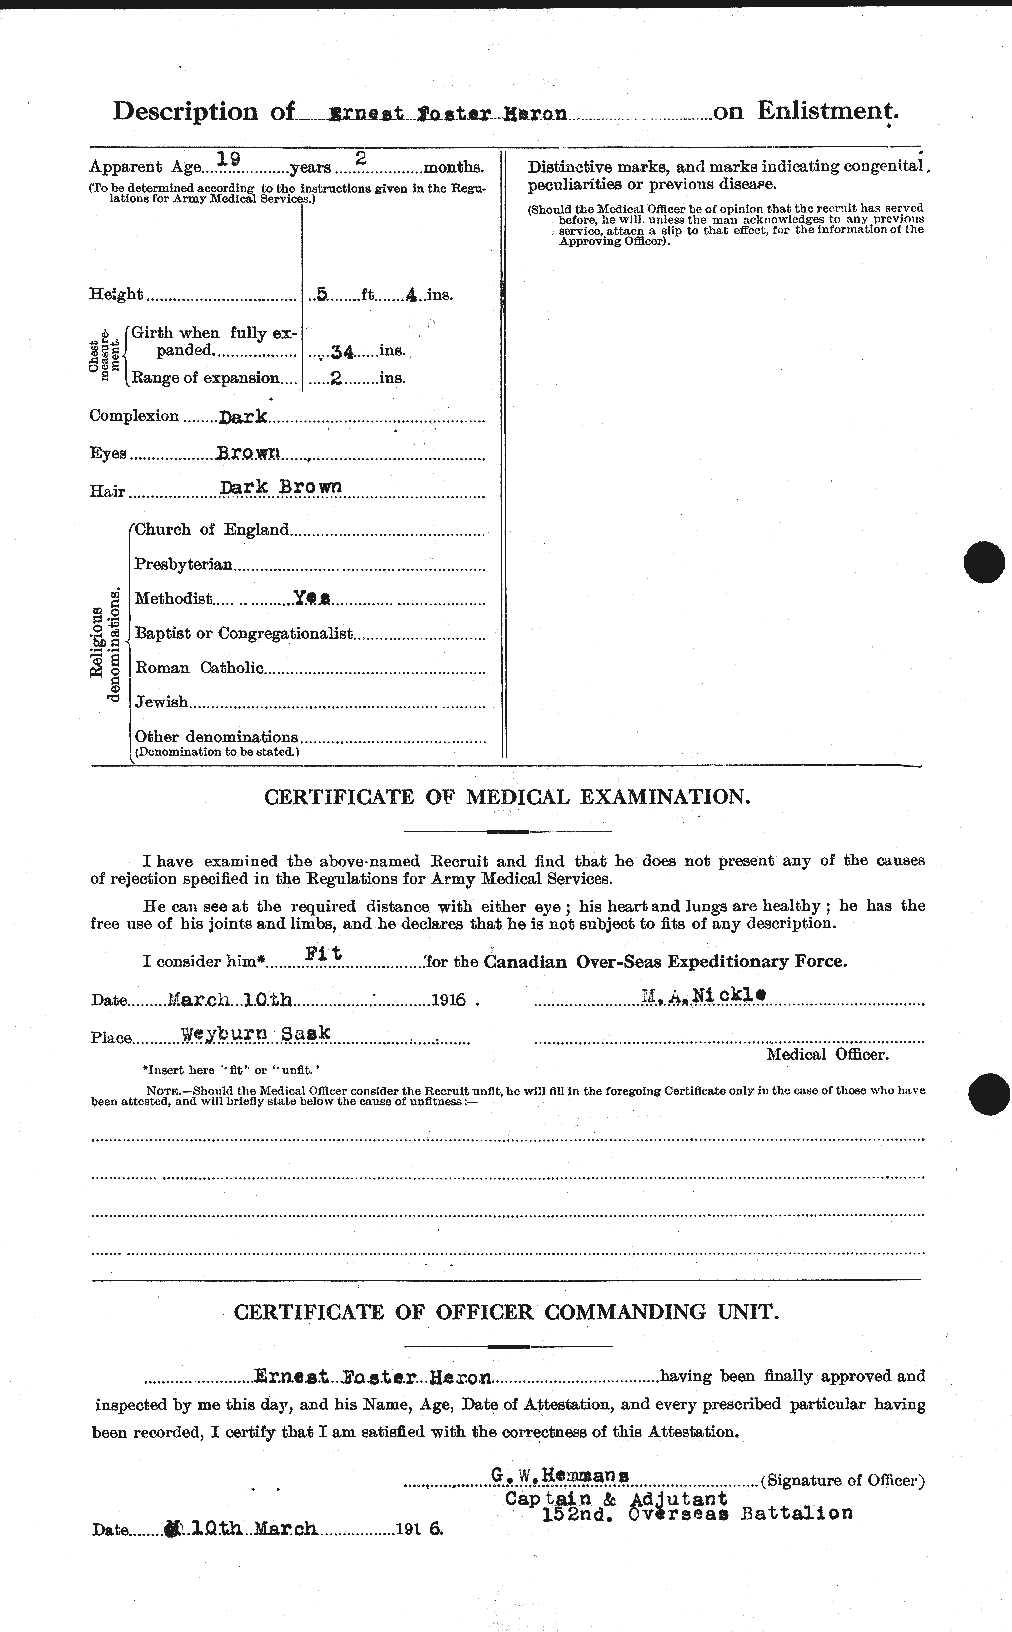 Dossiers du Personnel de la Première Guerre mondiale - CEC 388451b